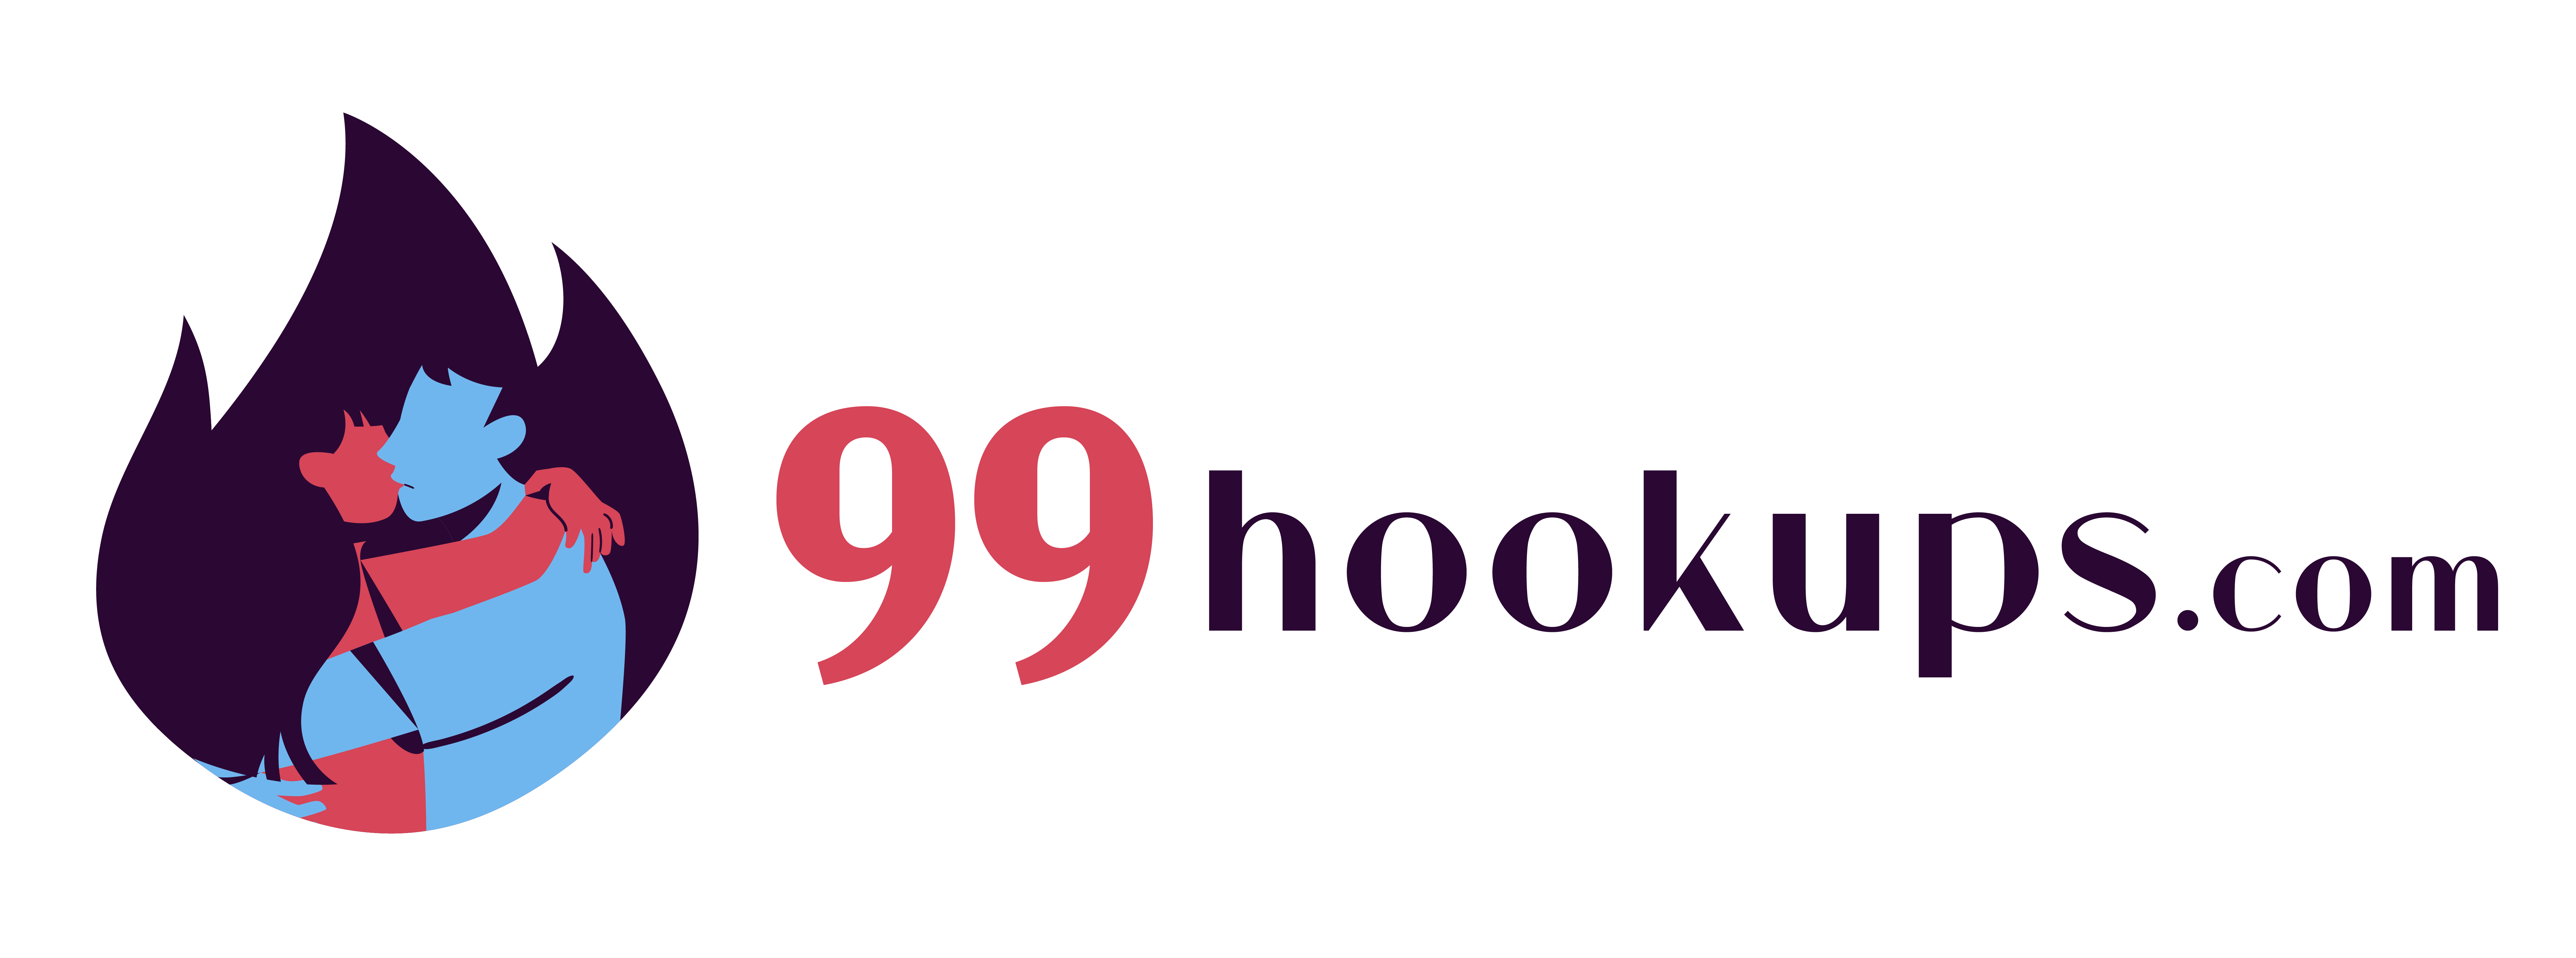 99hookups.com